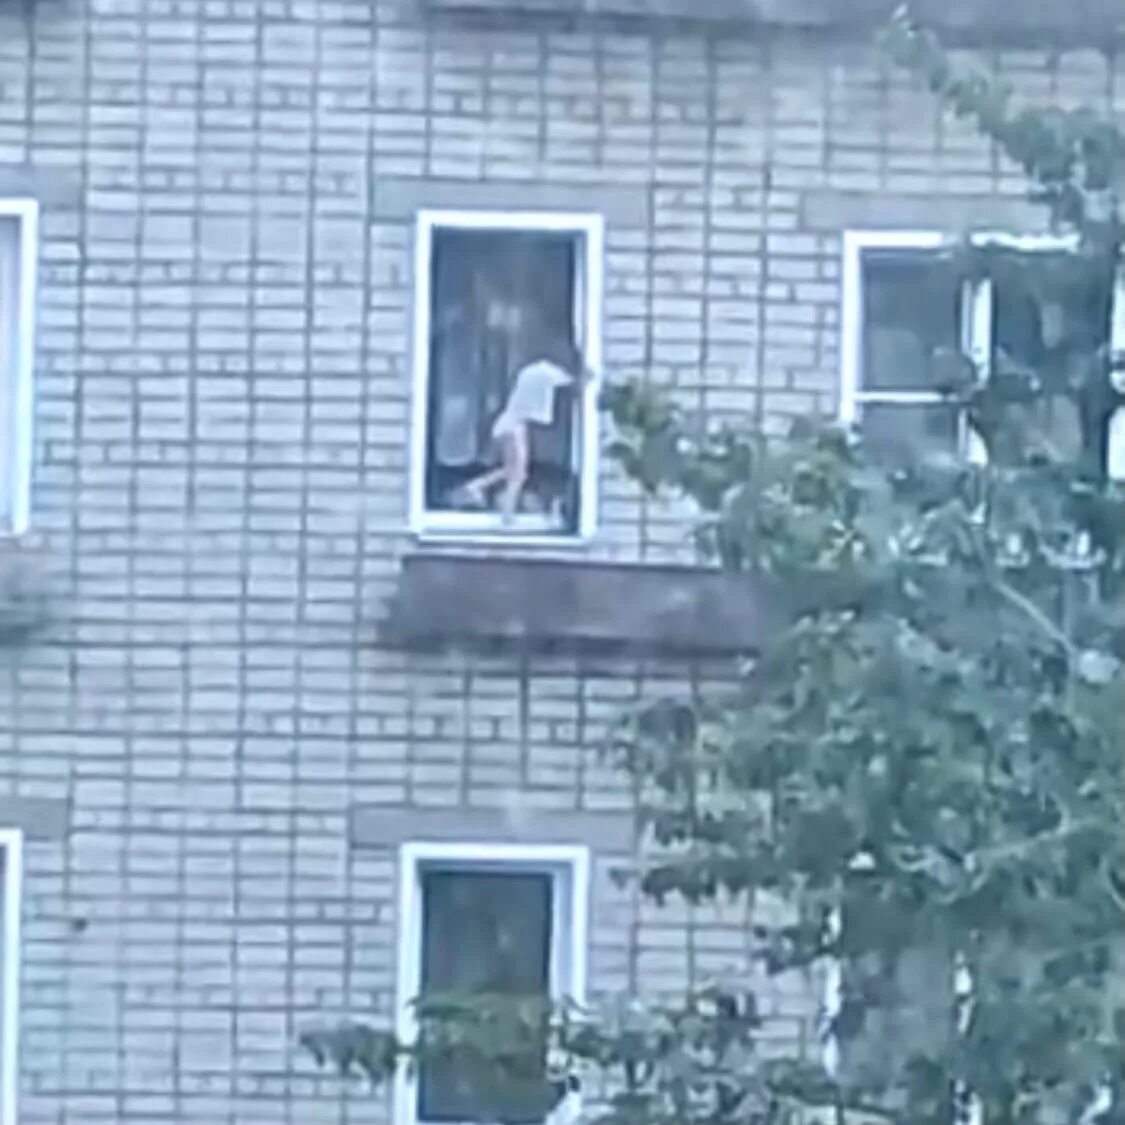 Сонник выпасть из окна. Ребенок на карнизе 8 этажа. Человек у окна.